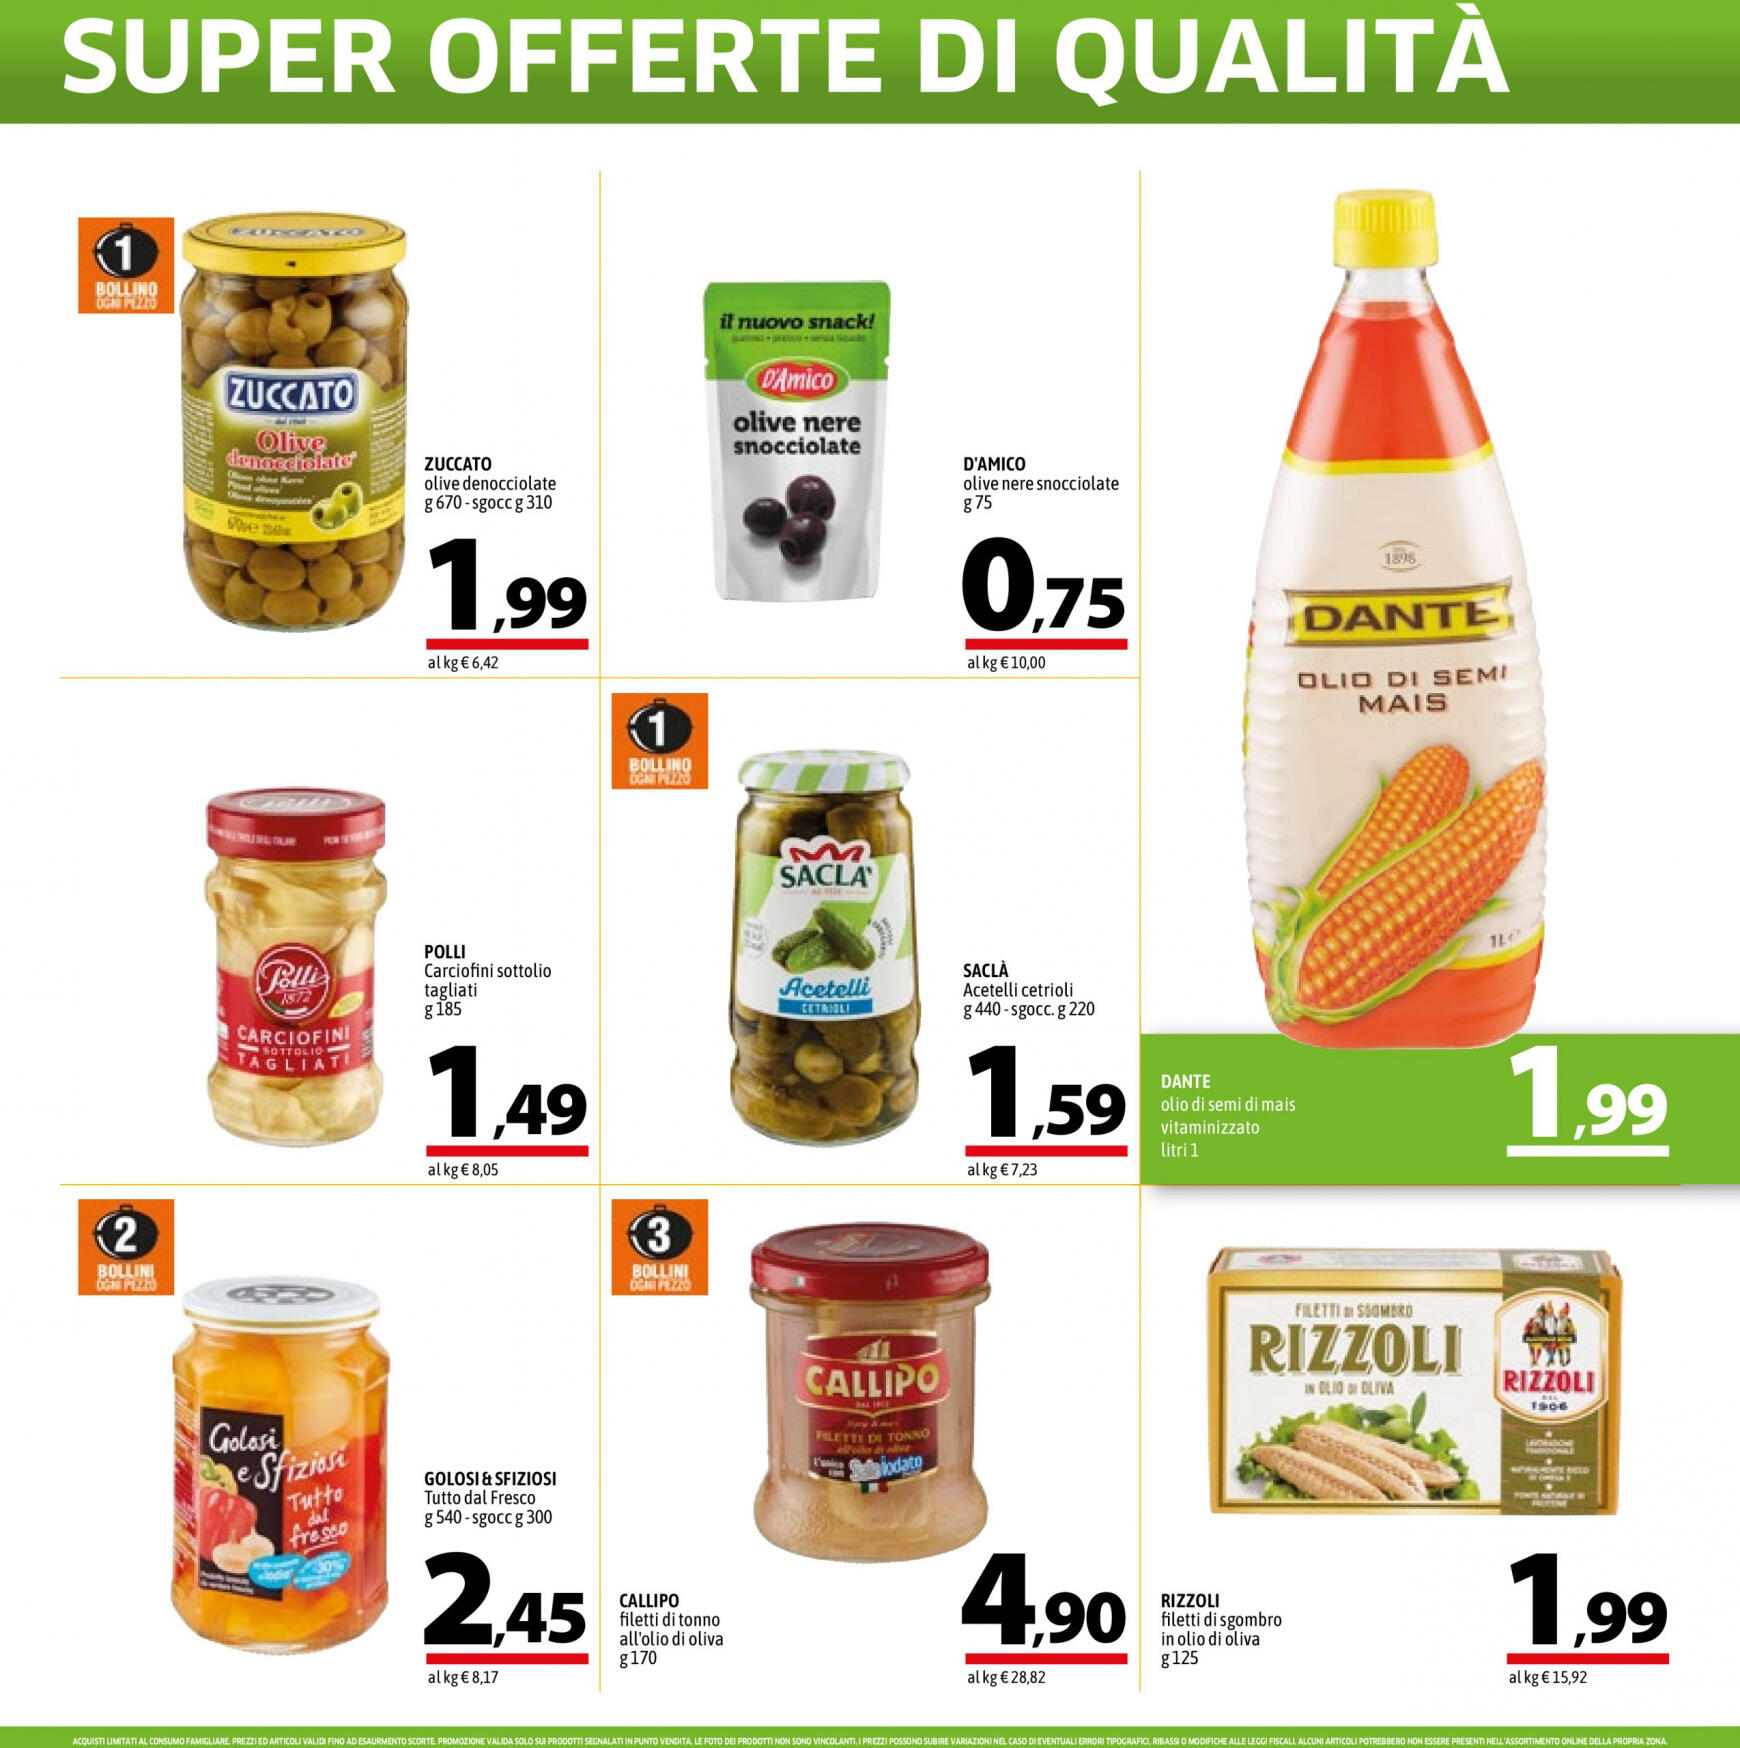 a-o - Nuovo volantino A&O - Super Offerte Di Qualita' 02.05. - 15.05. - page: 8